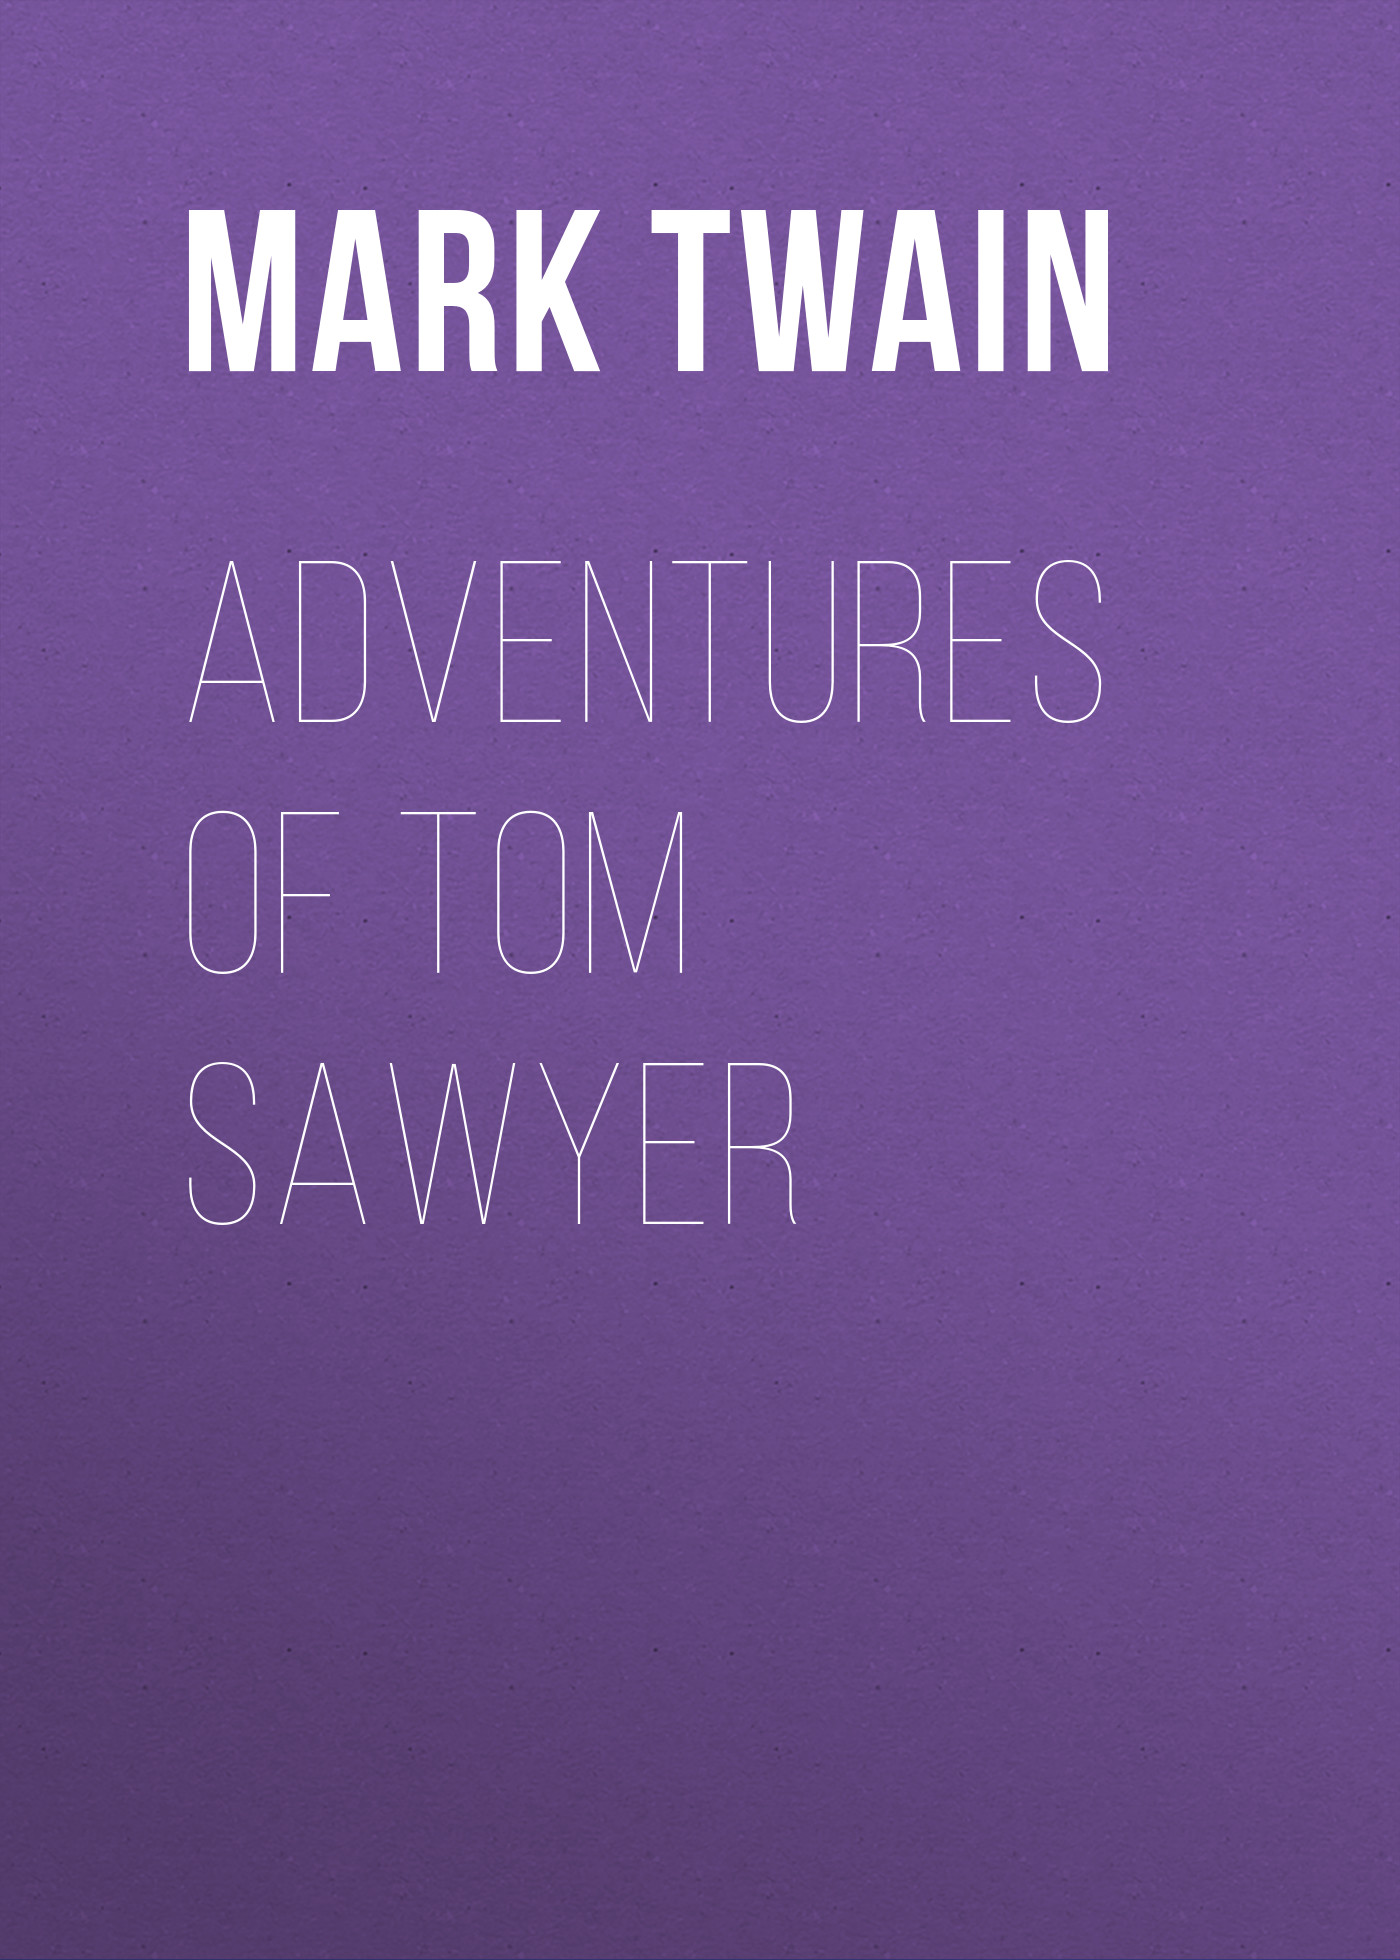 Книга Adventures of Tom Sawyer из серии , созданная Марк Твен, может относится к жанру Зарубежная классика, Зарубежная старинная литература. Стоимость электронной книги Adventures of Tom Sawyer с идентификатором 21103262 составляет 5.99 руб.